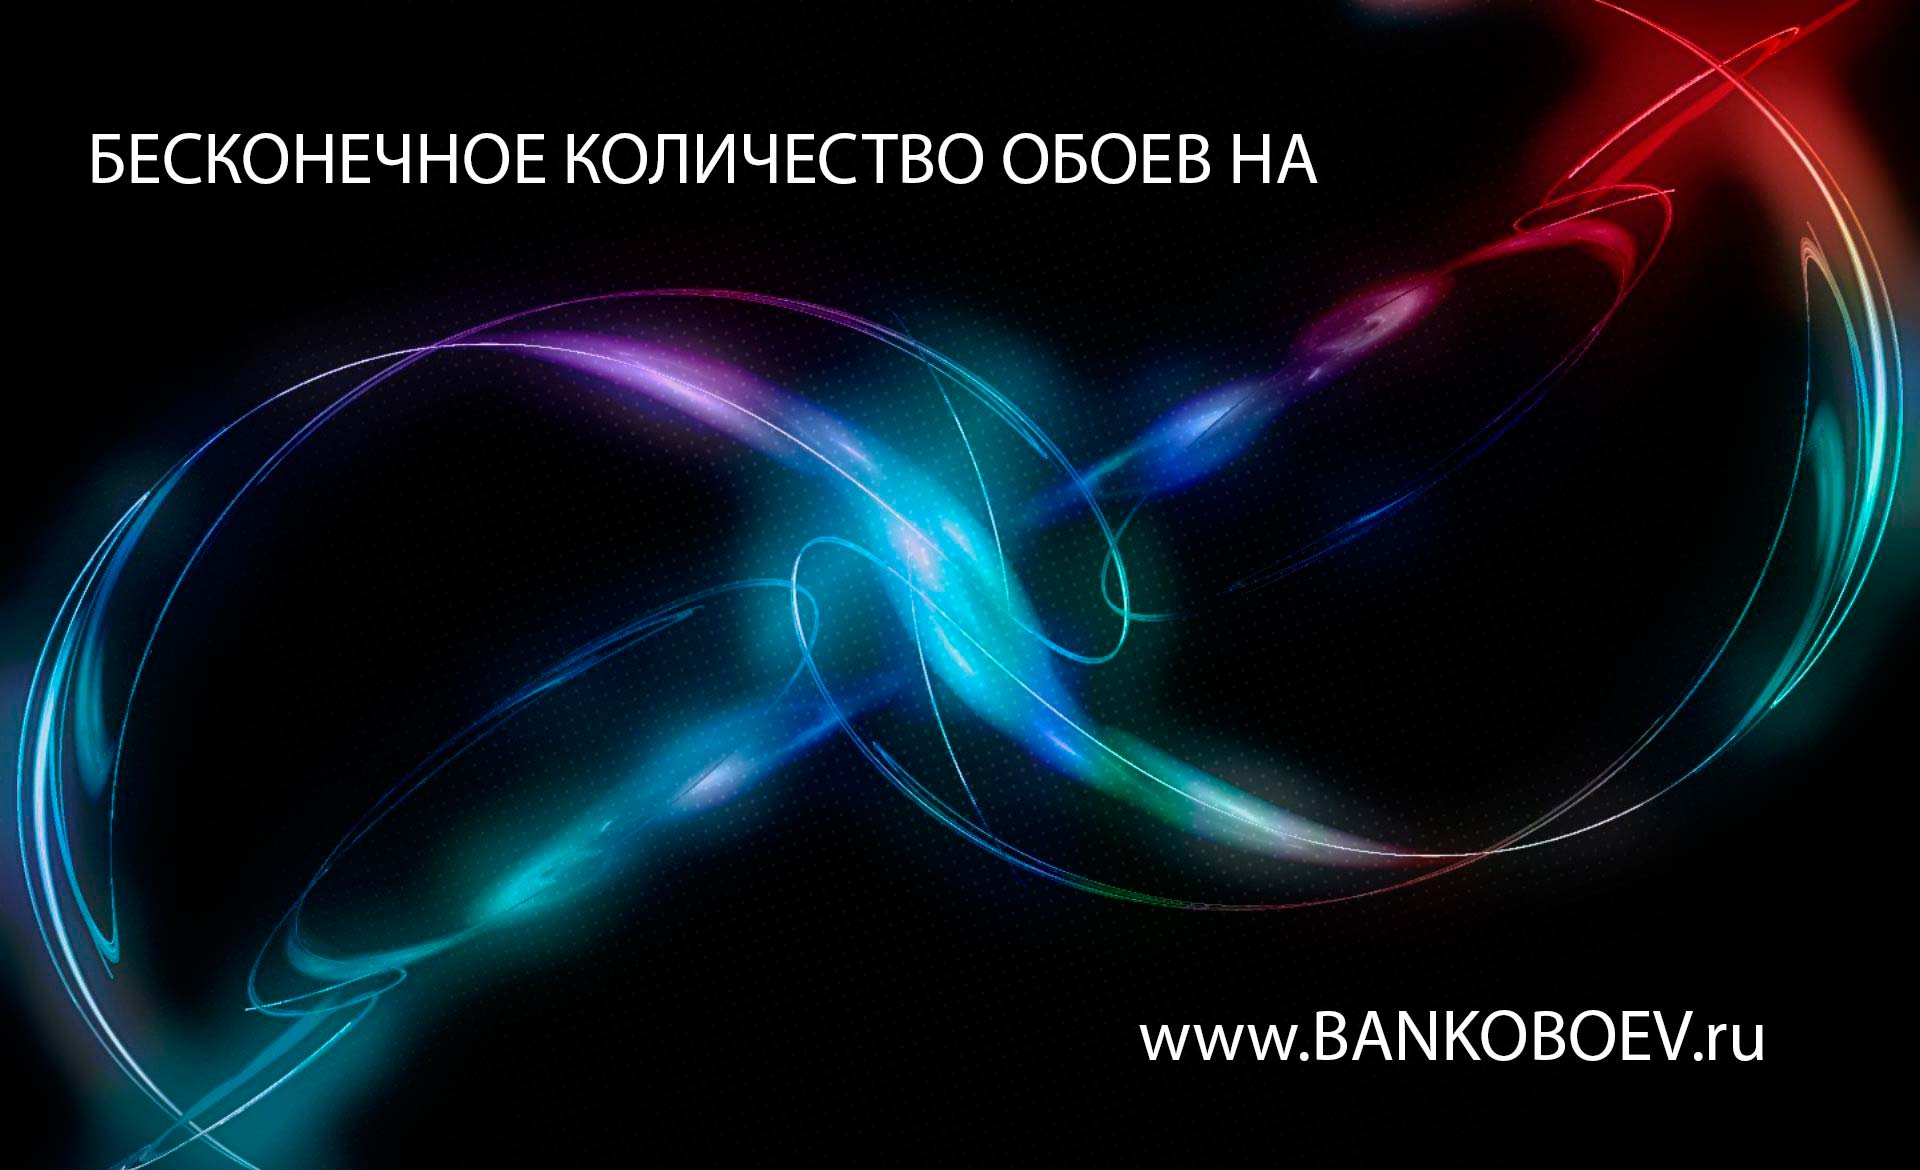     Http   Www Bankoboev Ru Images Mjuzmdk2 Bankoboev Ru Spa Procedury Jpg